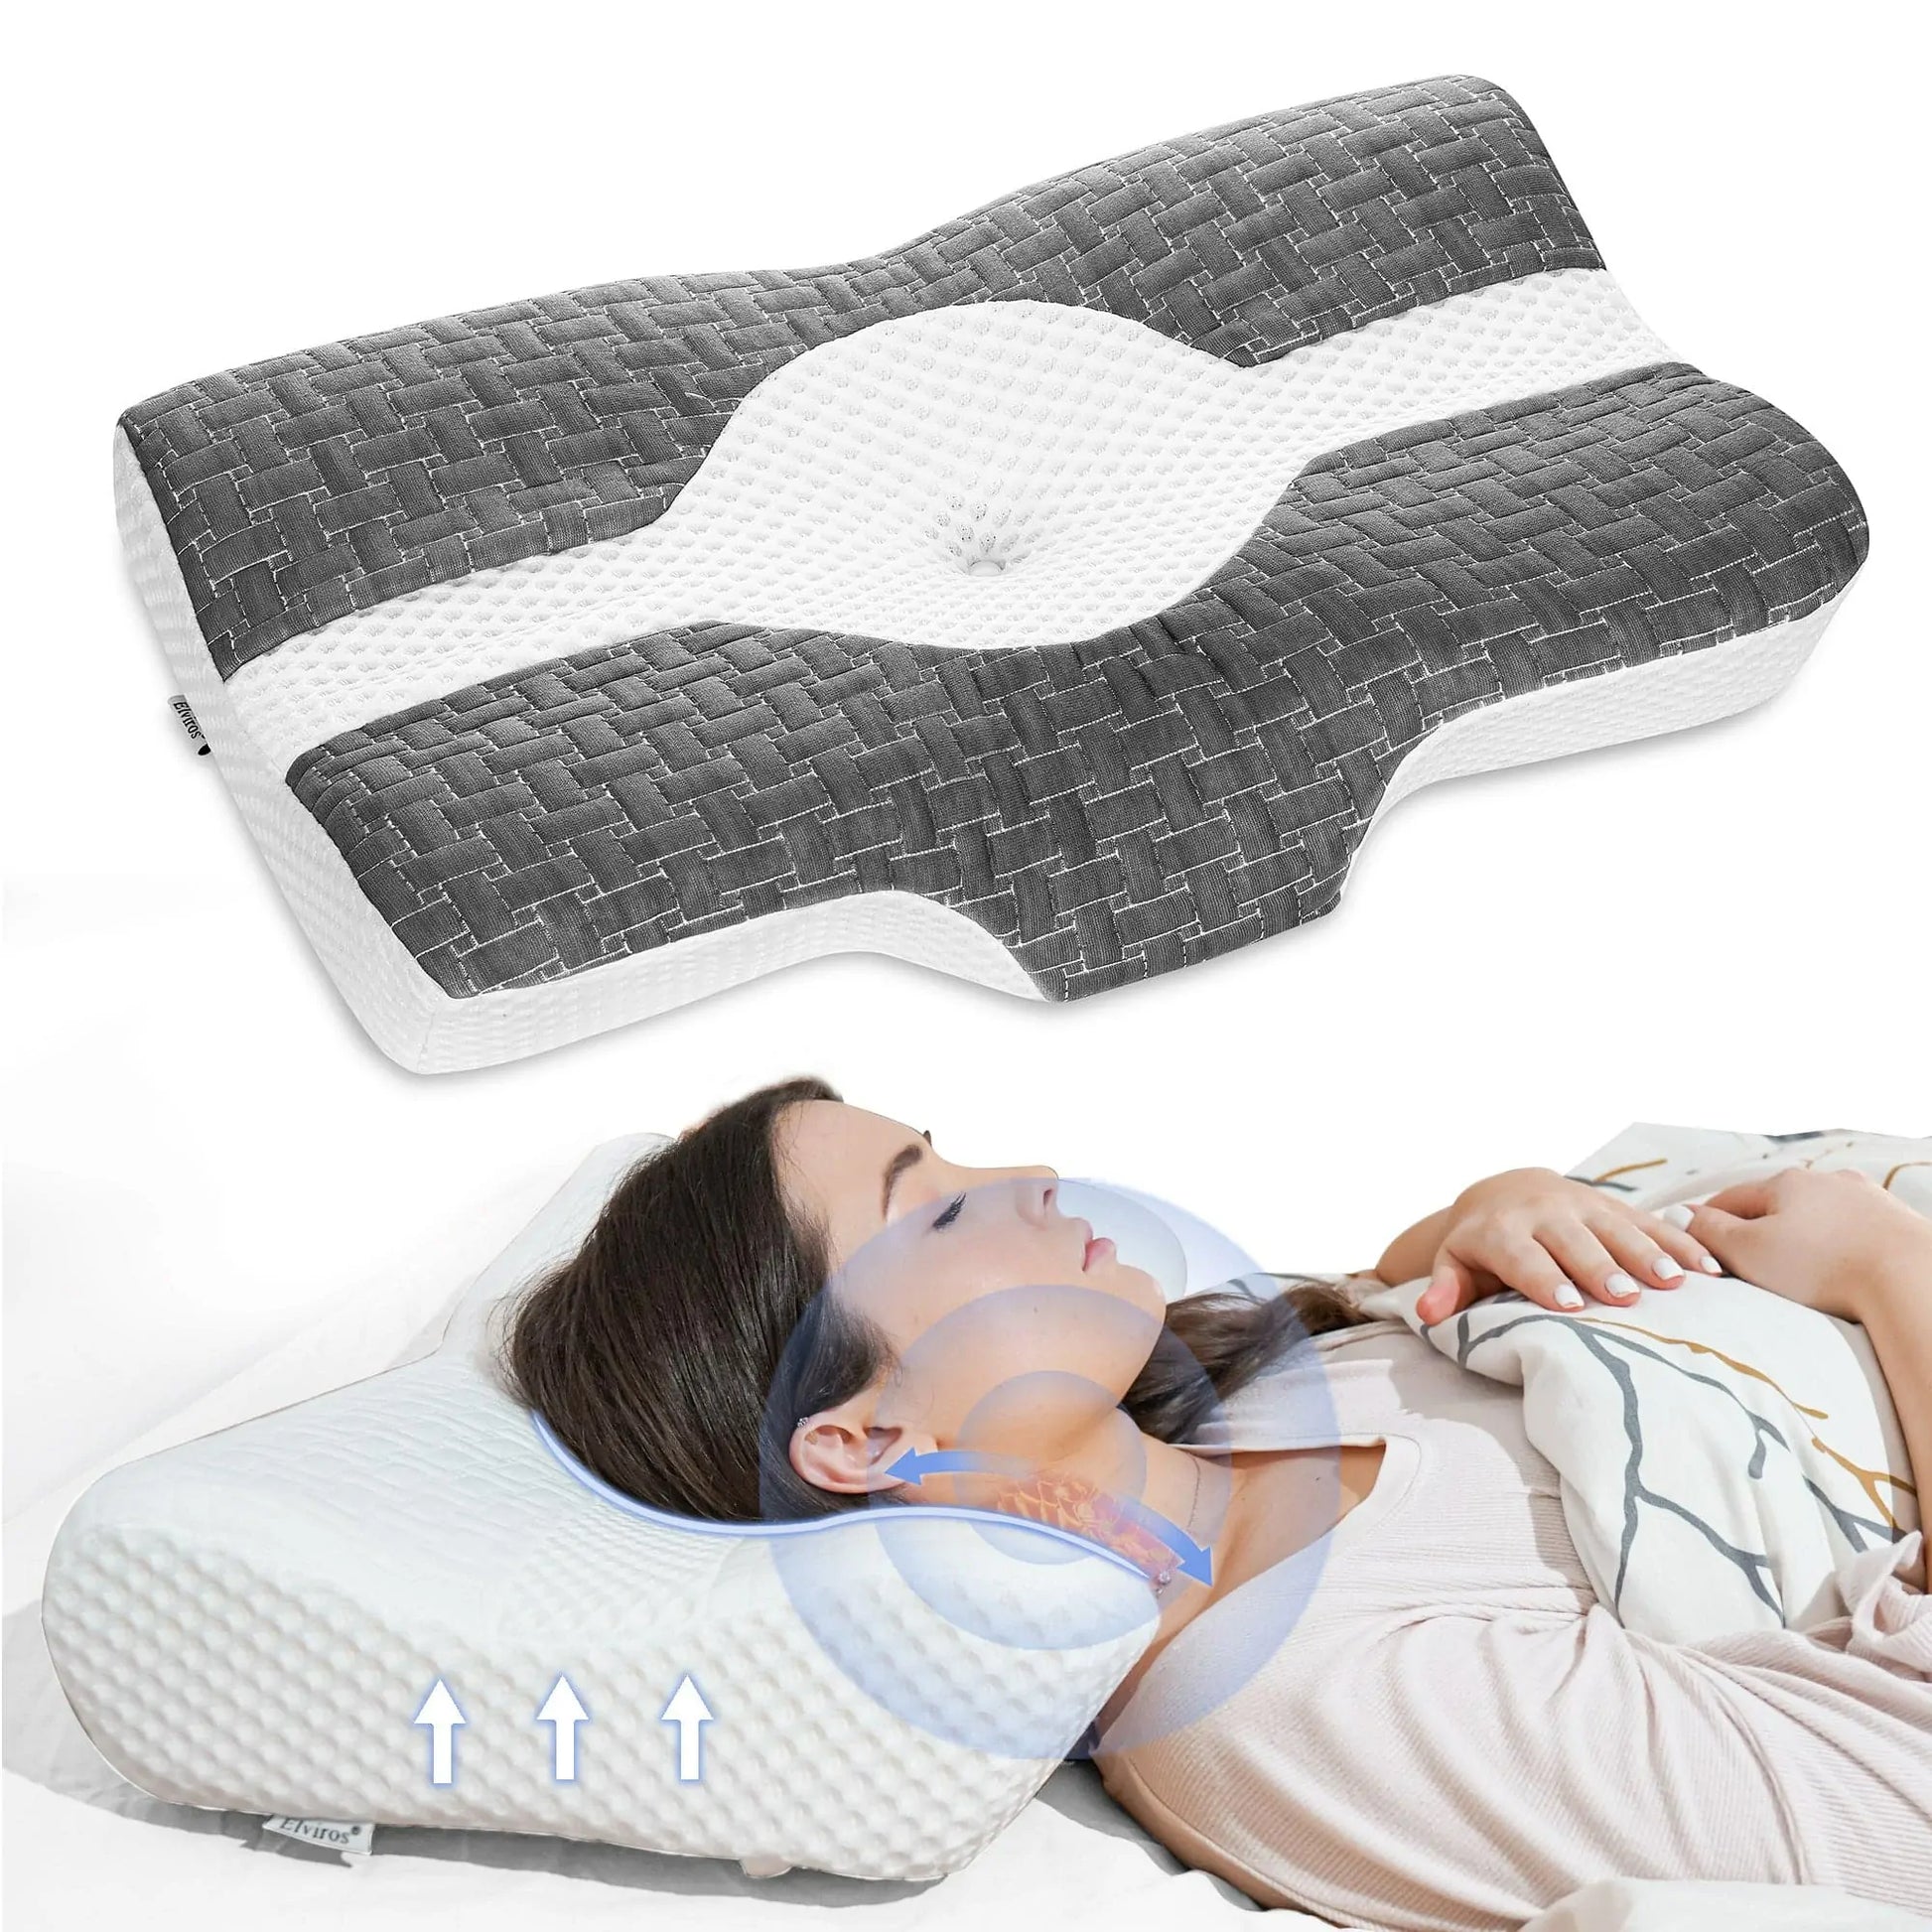 Elviros Lumbar Support Pillow for Sleeping